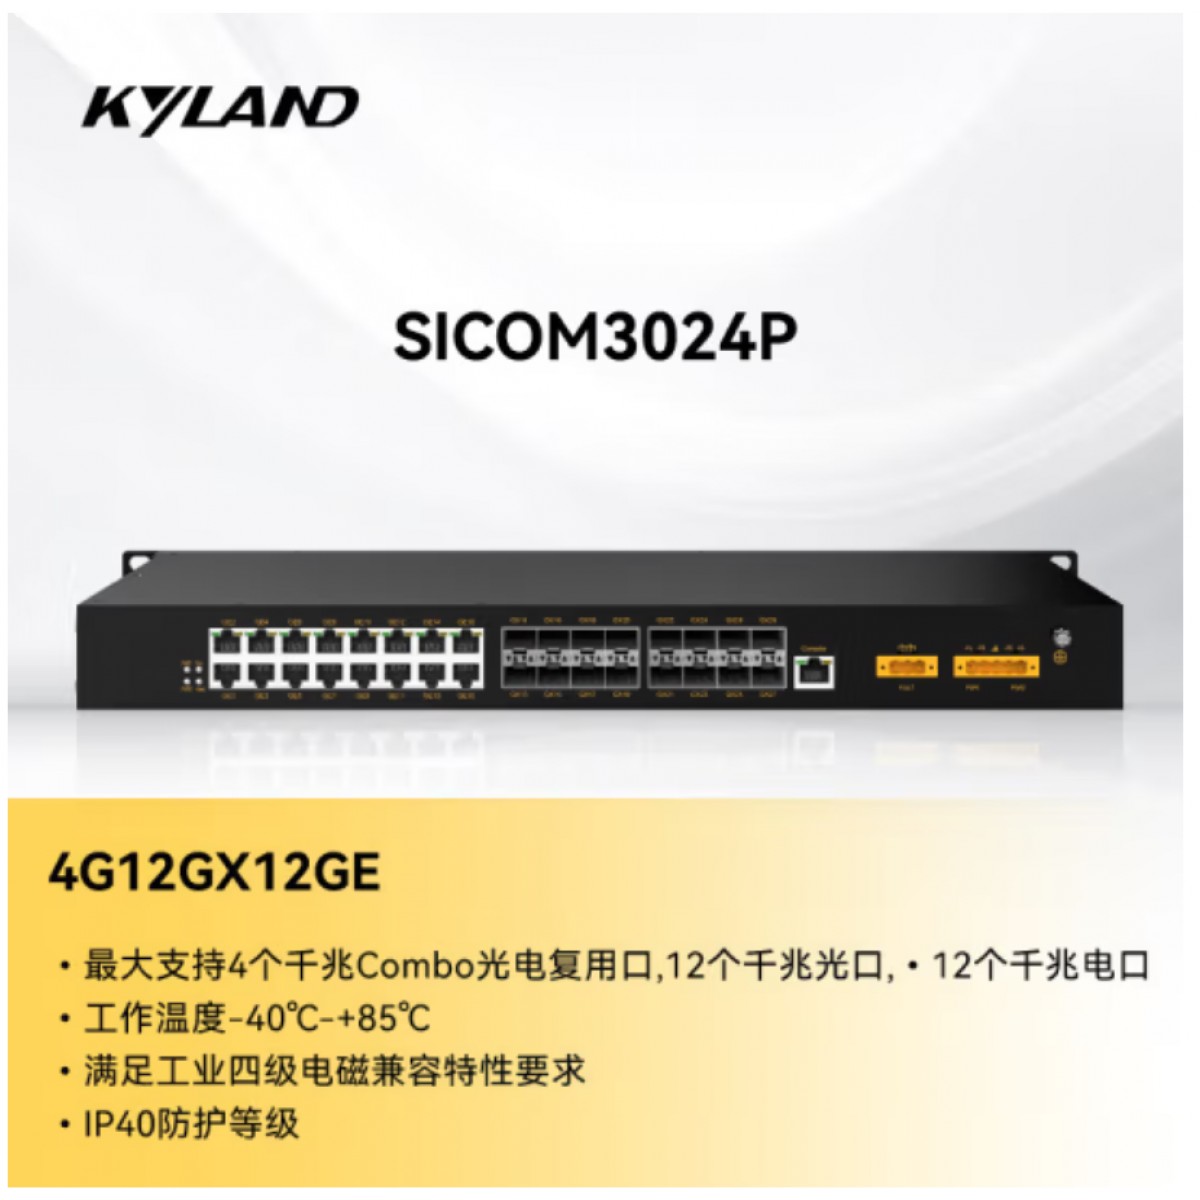 东土科技（KYLAND) 交换机 SICOM3024P-4G12GX12GE-HV-HV 全千兆端口二层网管型机架式交换机